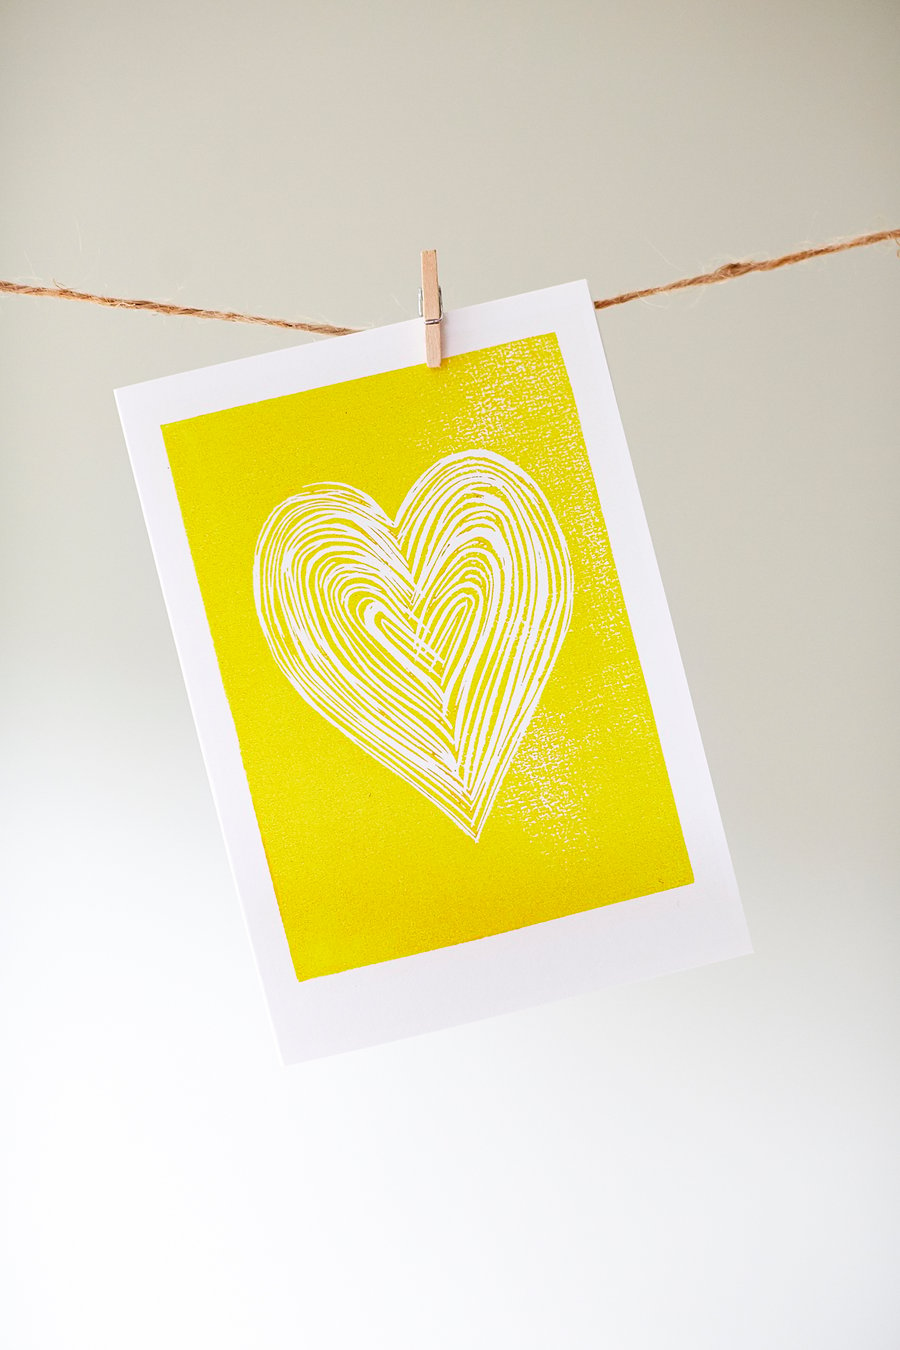 'Yellow Heart' card from original linocut